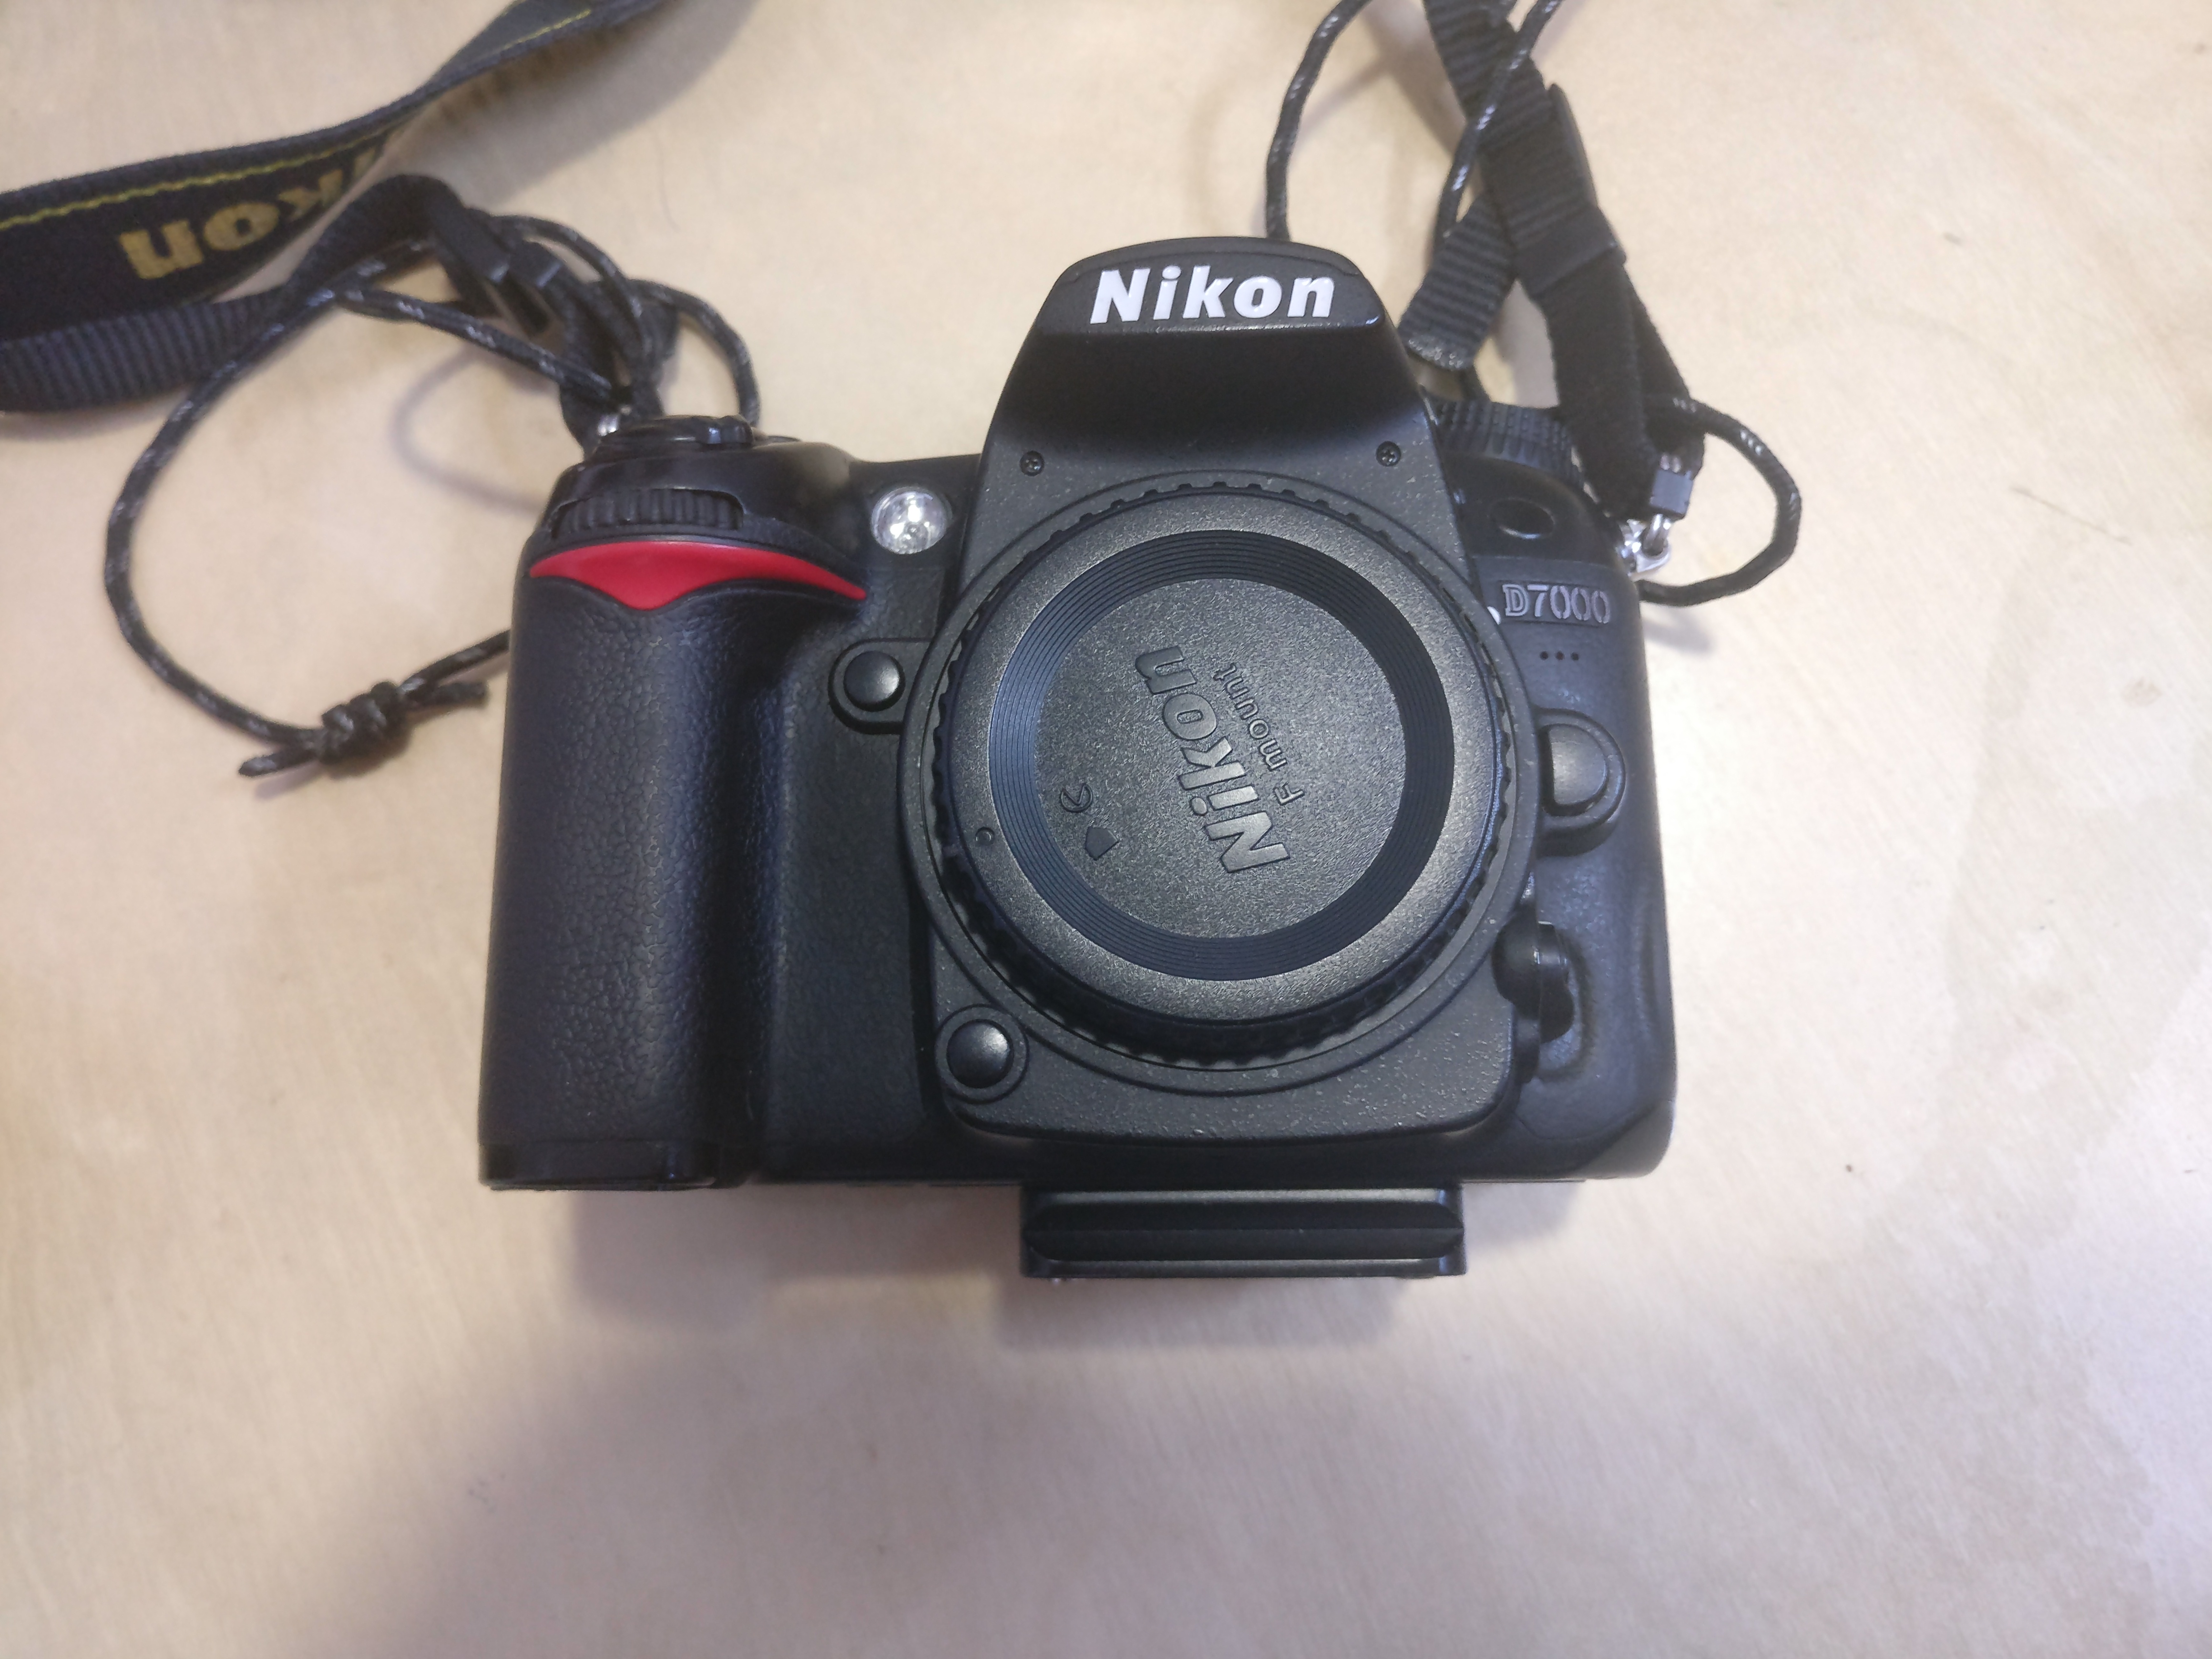 尼康 D7000 机身 腾龙 B005 17-50 F2.8 vc 防抖 镜头 自用便宜出